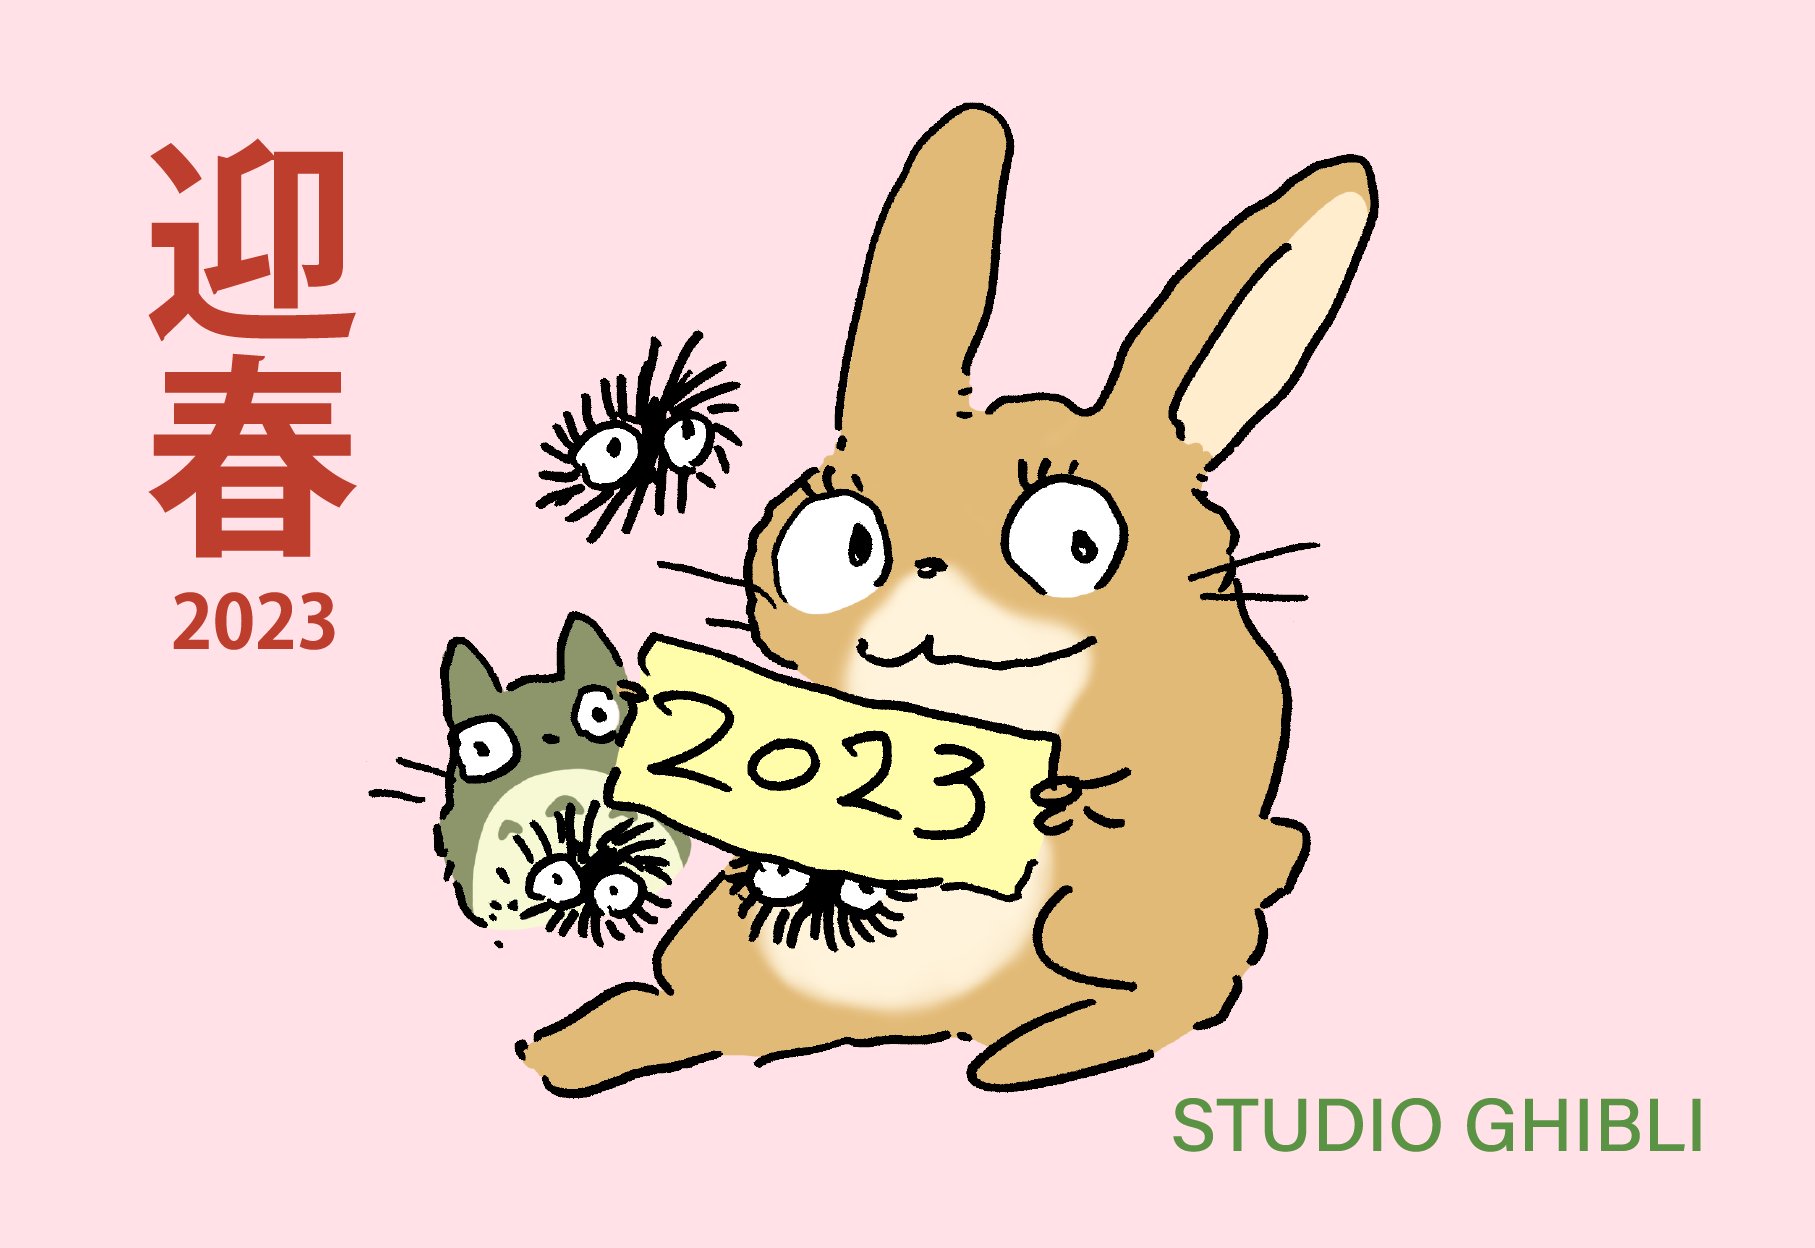 Nytår 2023 illustration fra Hayao Miyazaki og Studio Ghibli